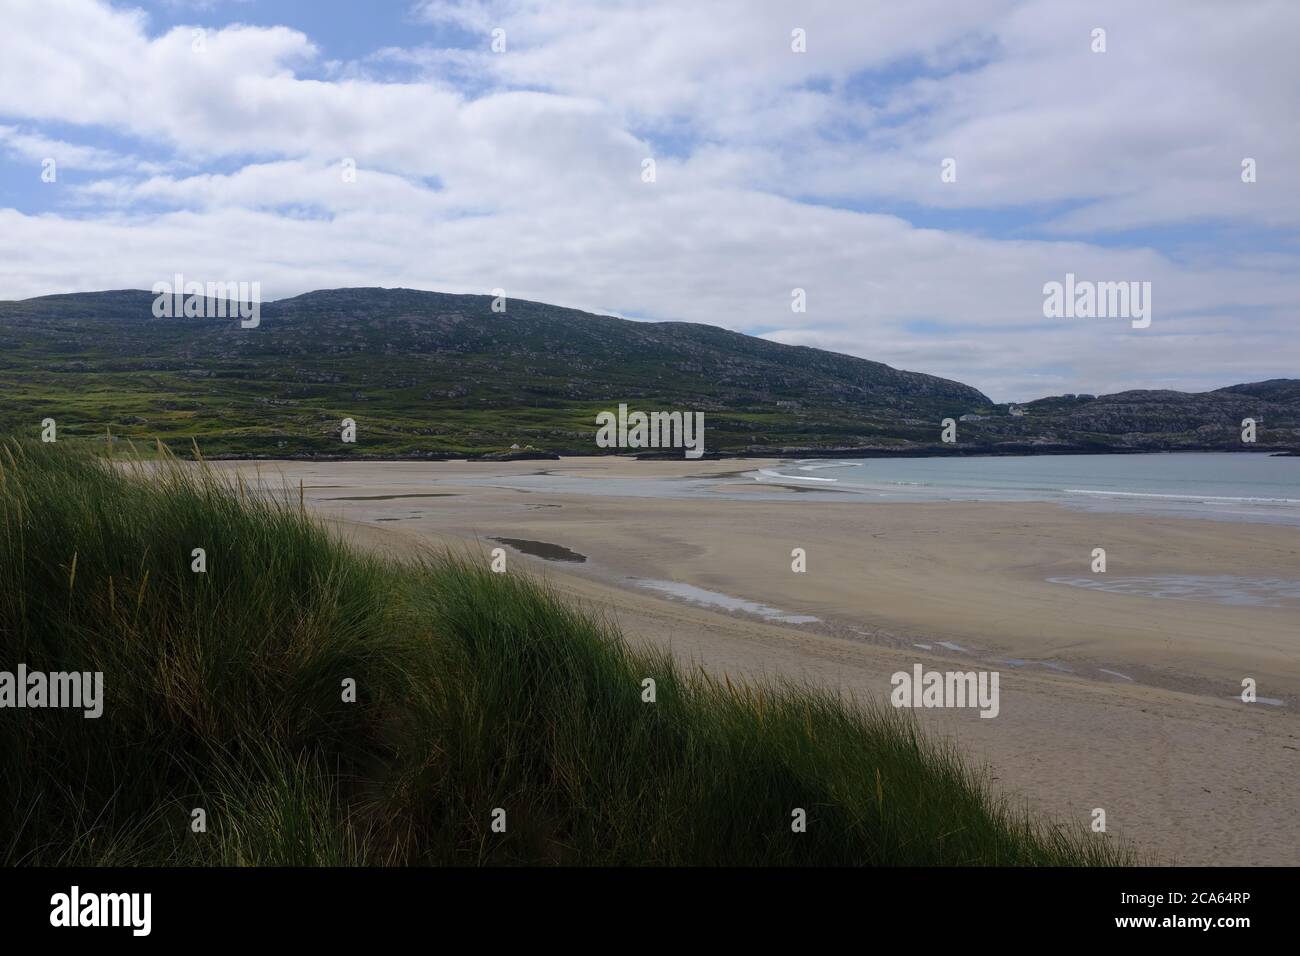 Spaziergang auf dem Kerry Way im Jahr 2019 in Graf Kerry im Süden Irlands, der um den Abschnitt der Iveragh-Halbinsel Caherdaniel nach Waterville führt Stockfoto